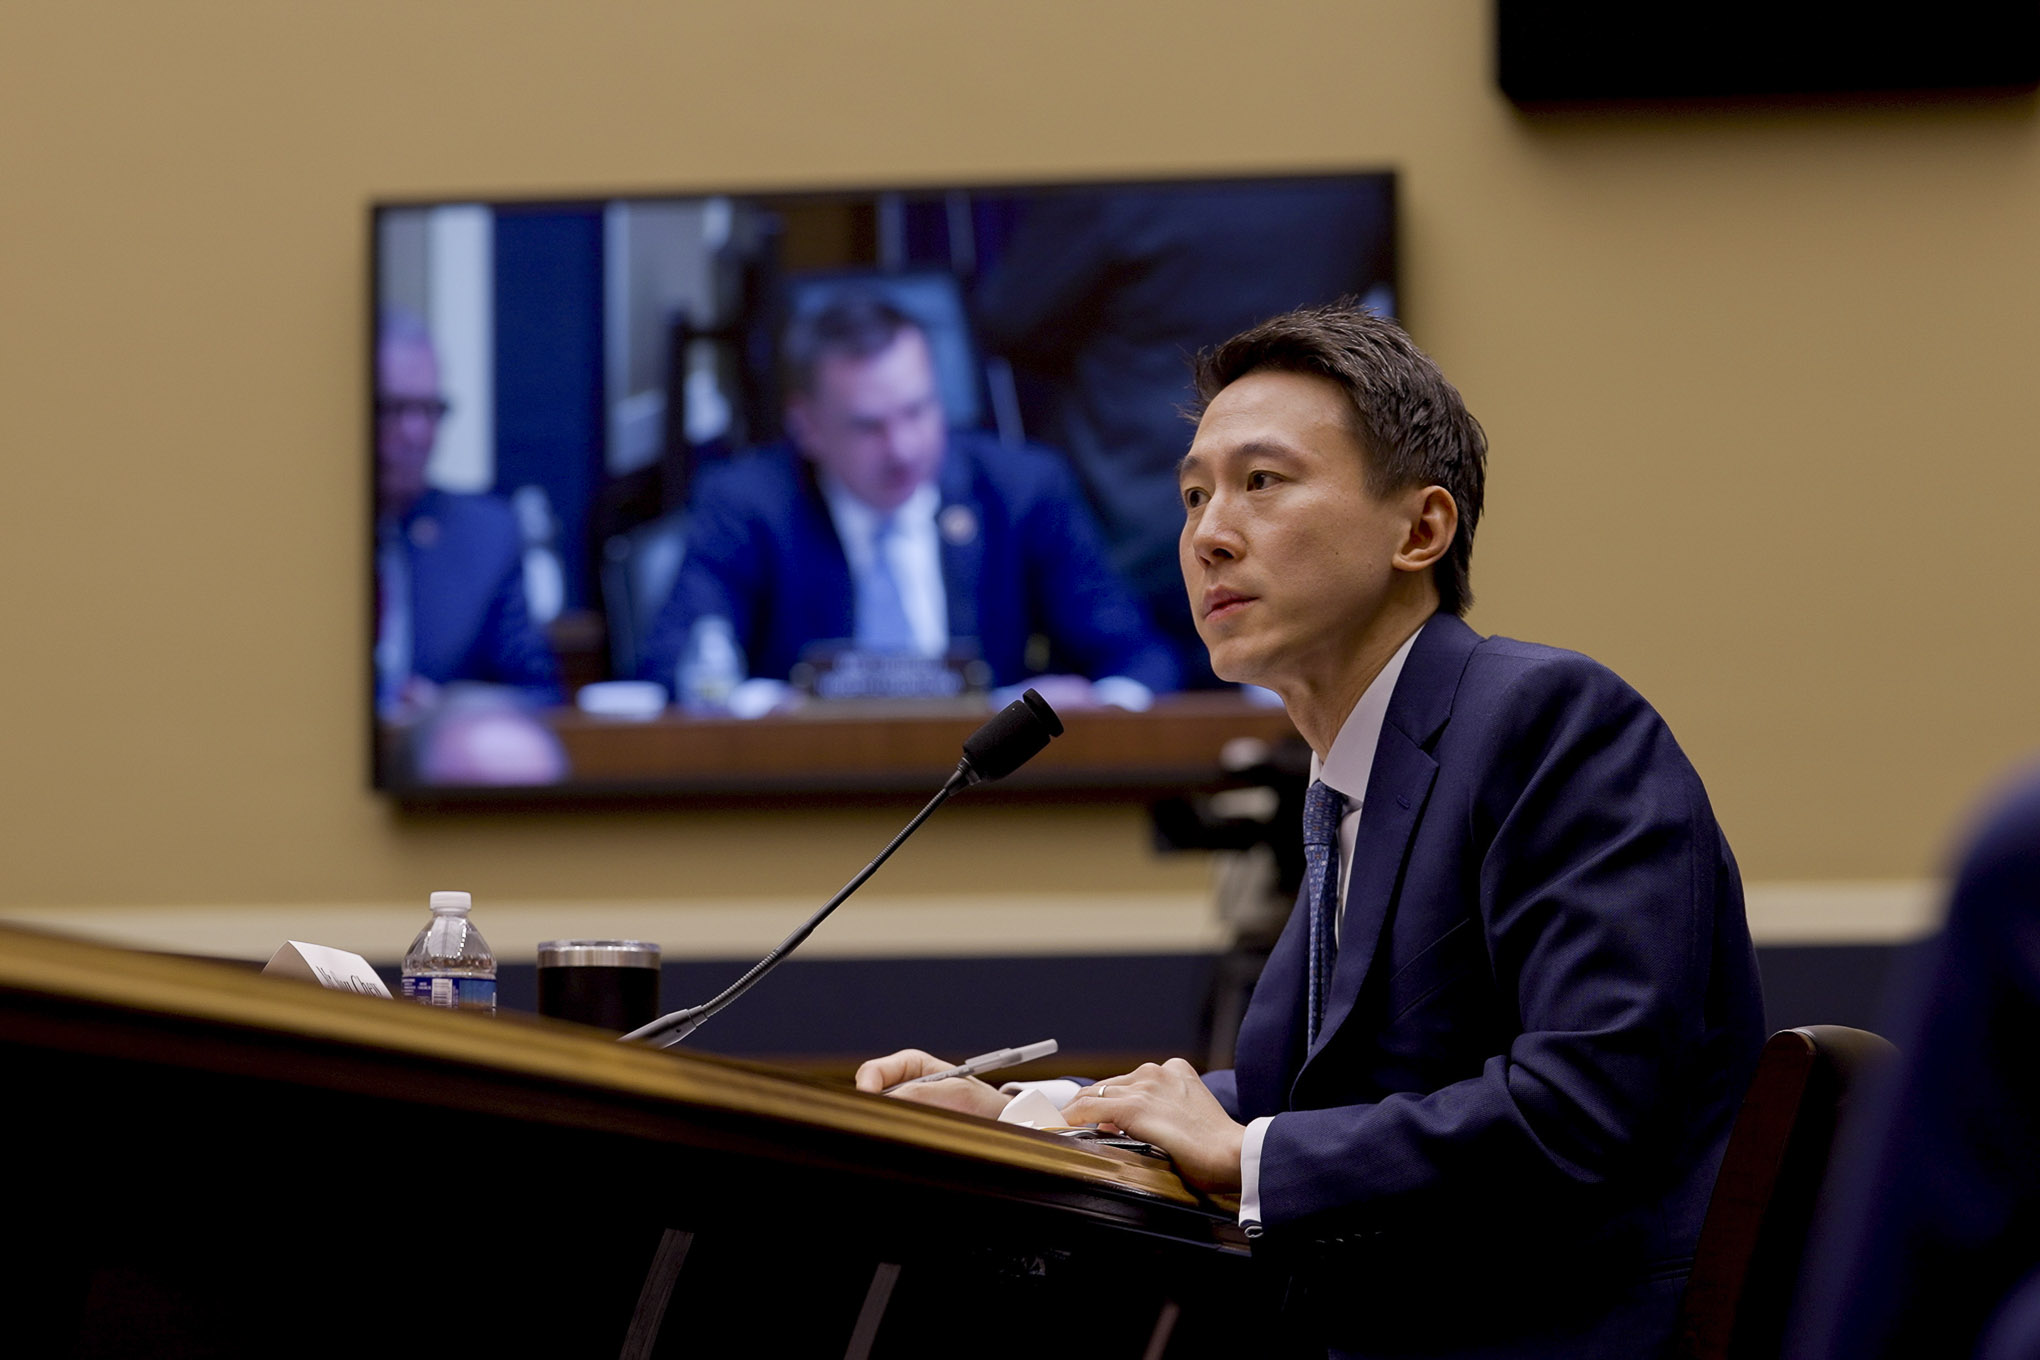 TikTok CEO Shou Zi Chew testifies in Congress.